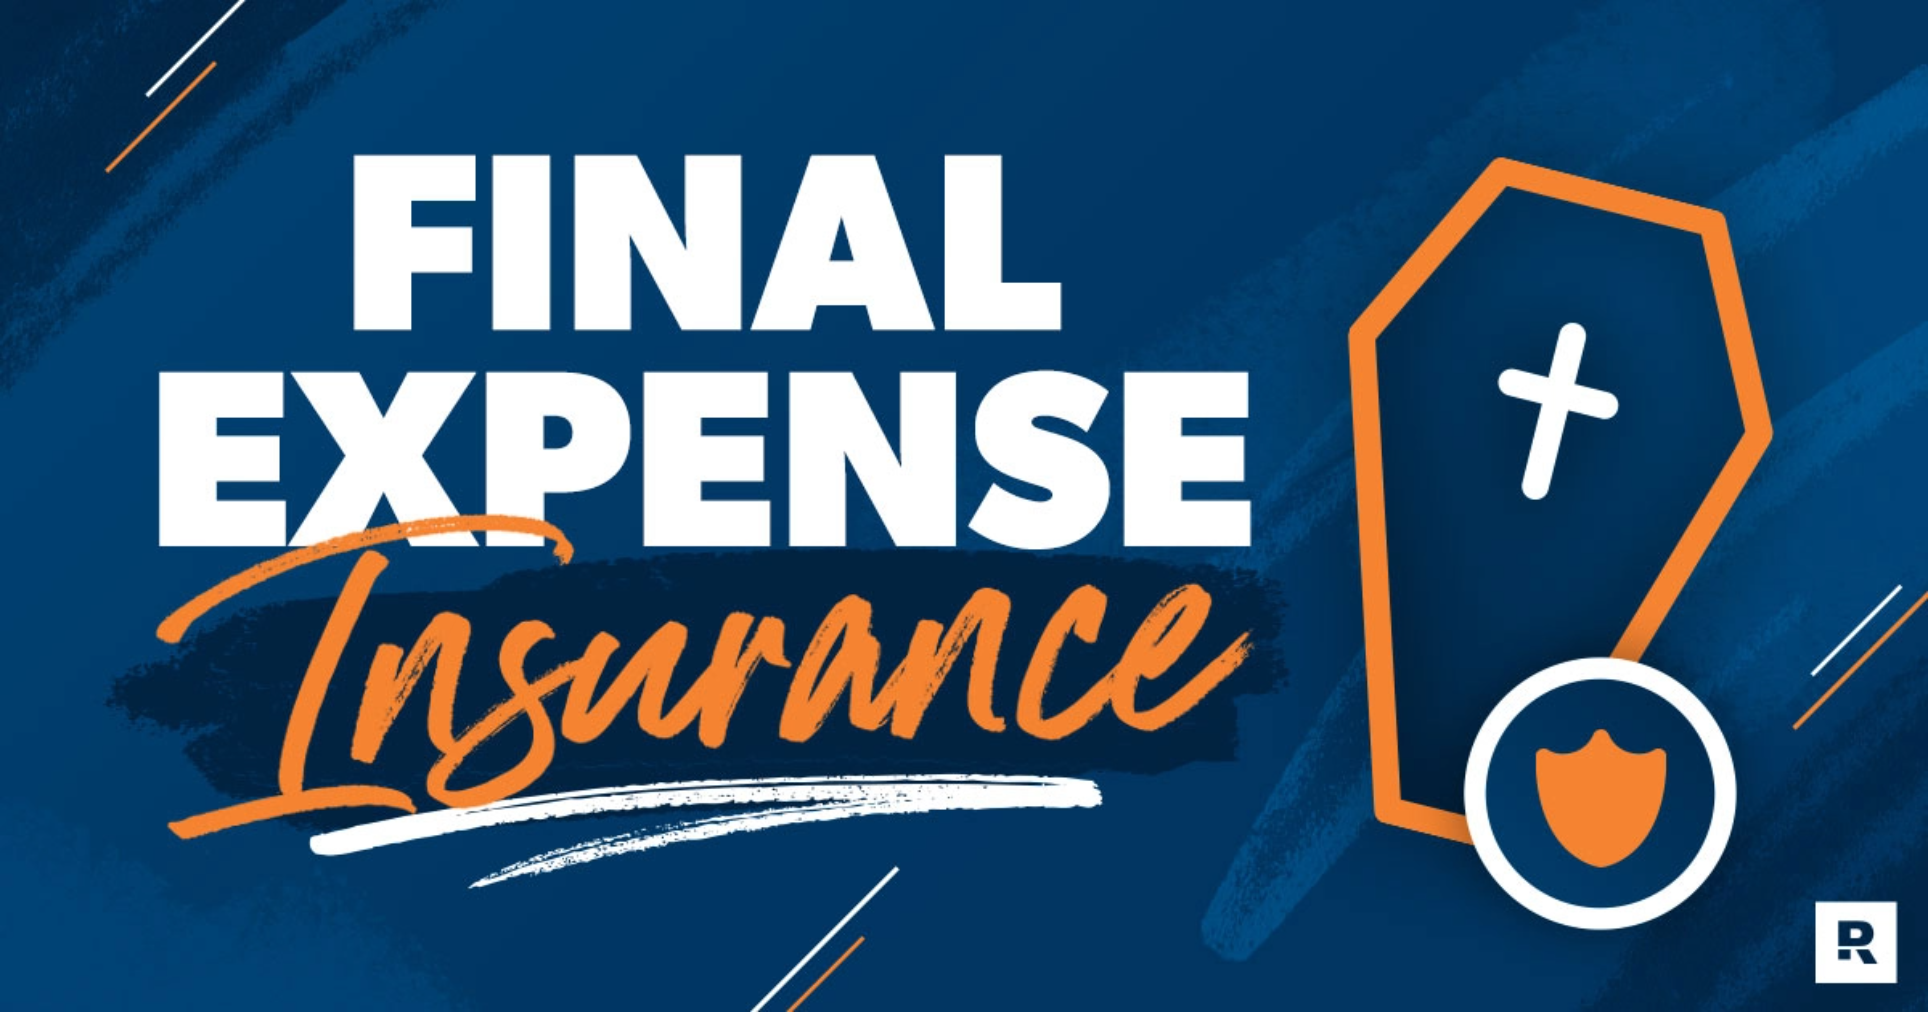 Final Expense Insurance blog header